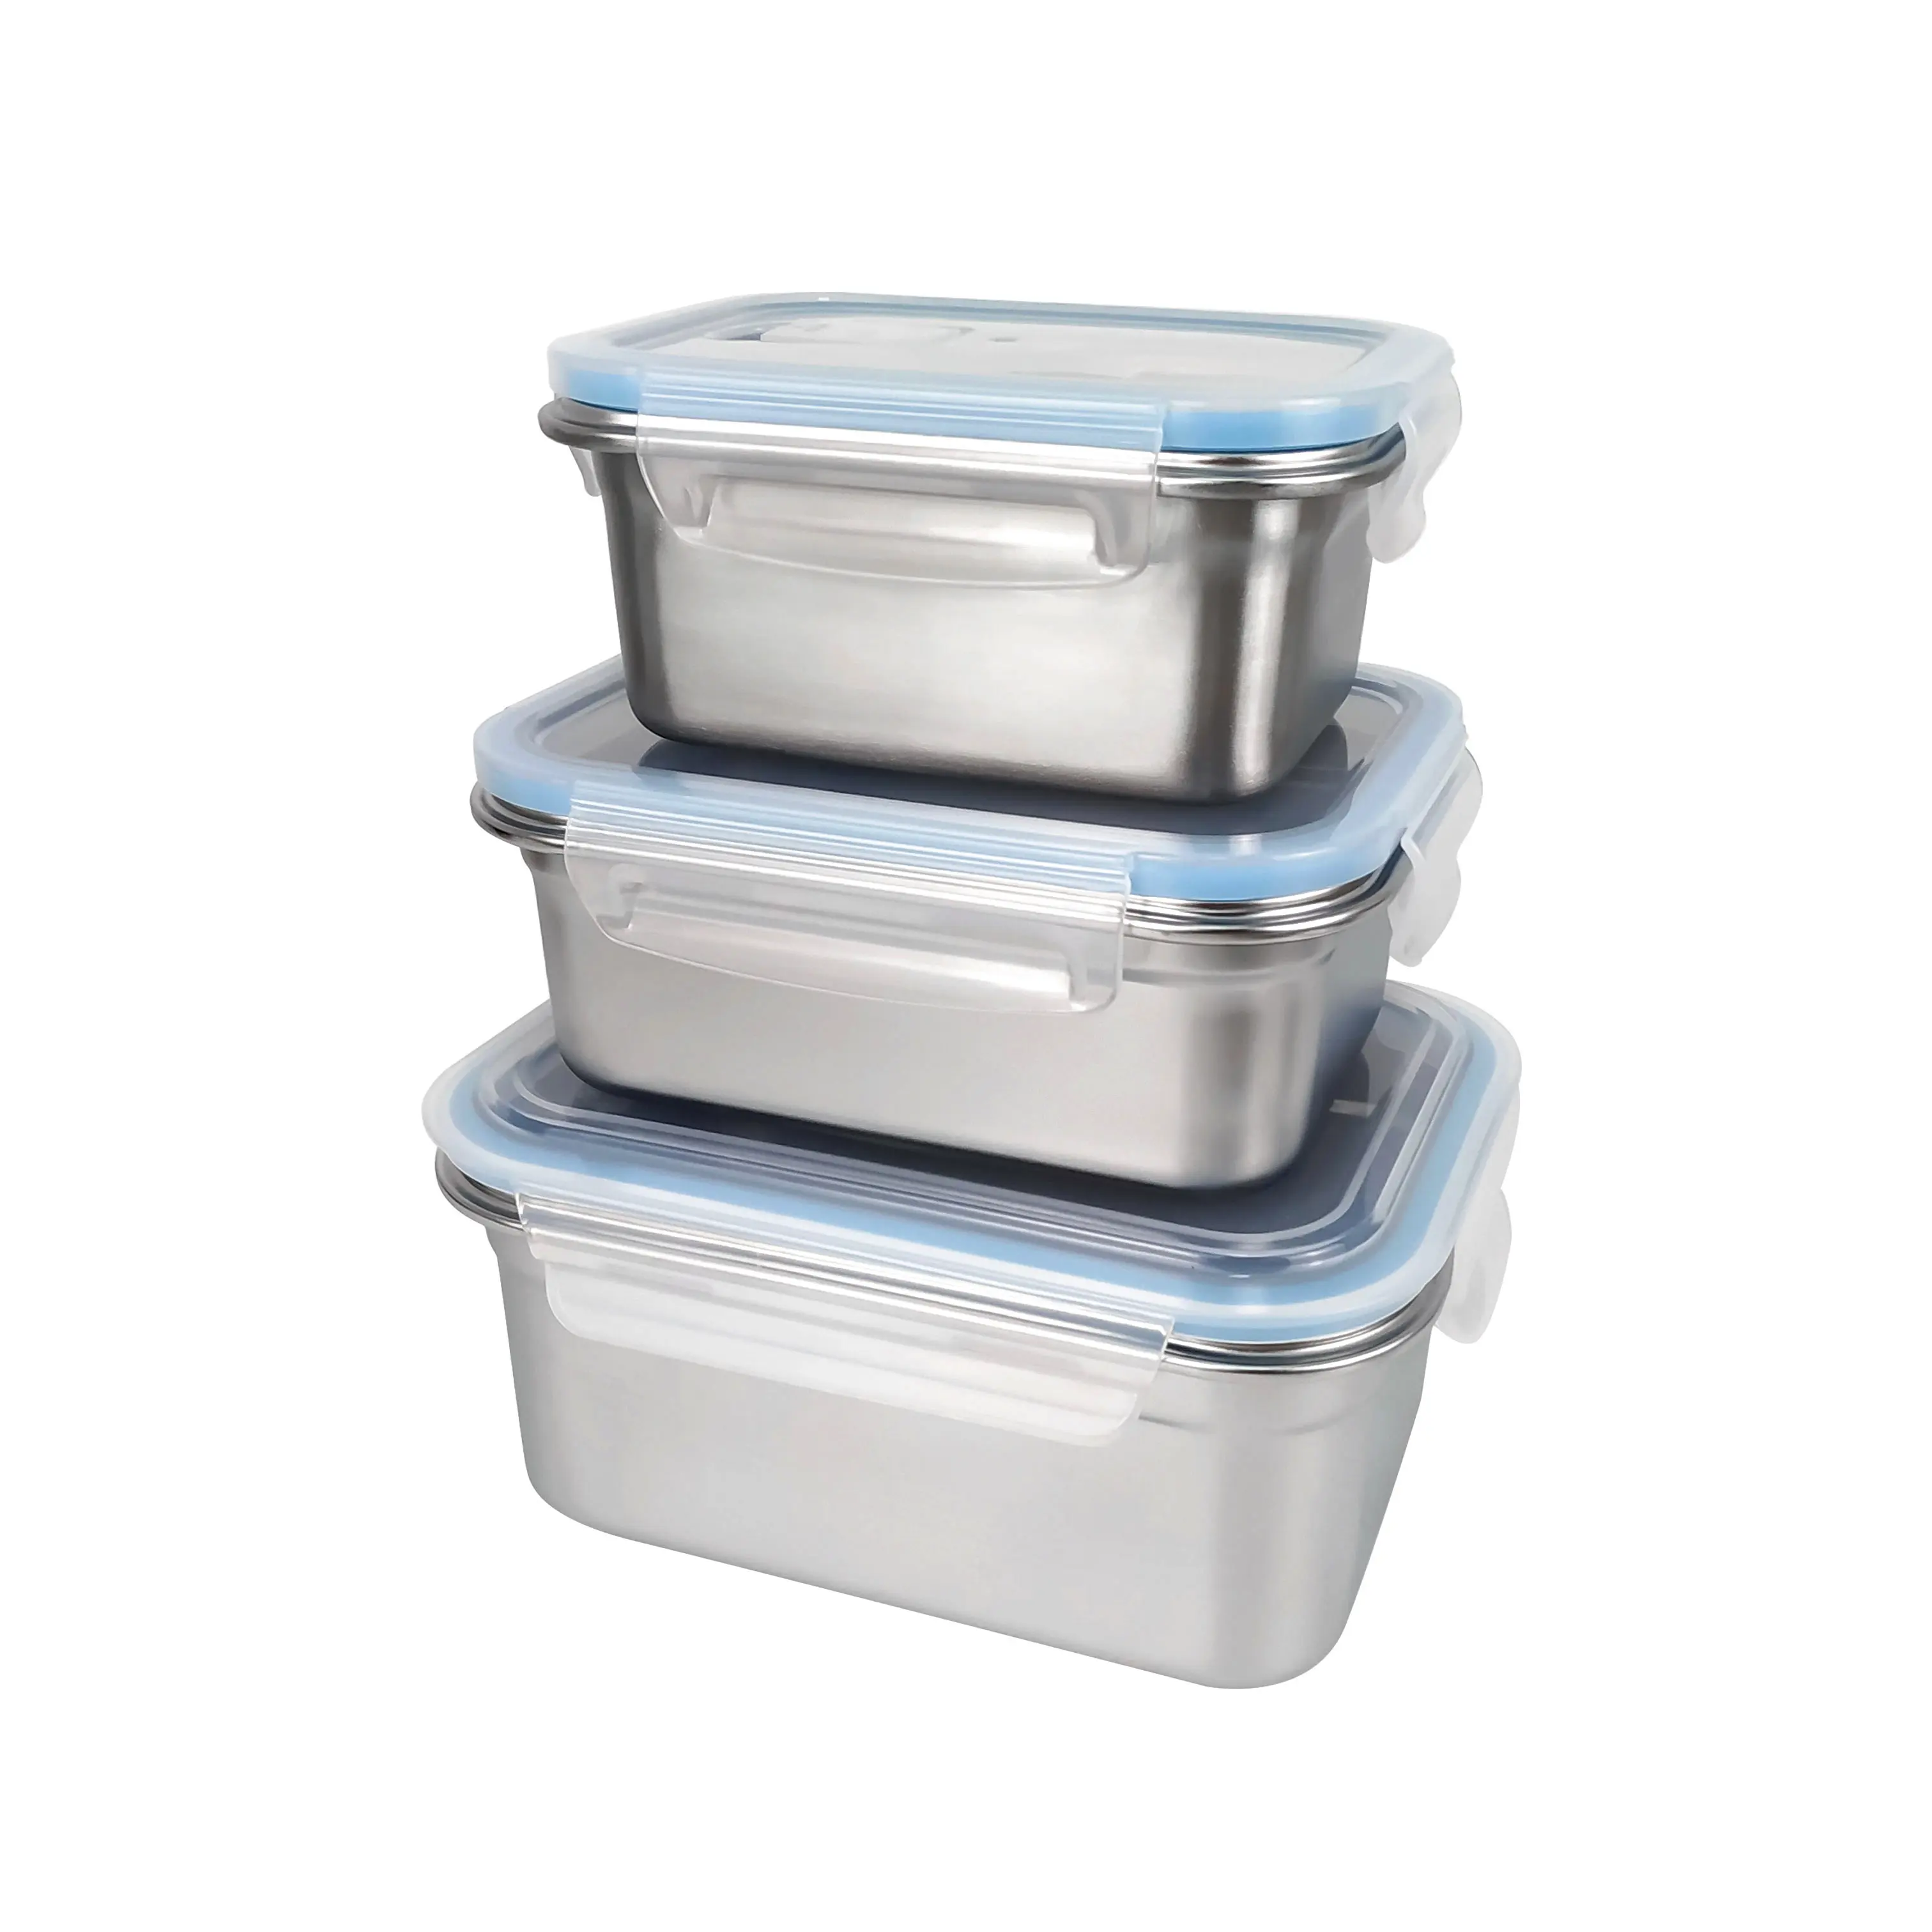 Bento Lunch Box in acciaio inossidabile con coperchio in plastica a tenuta stagna per bambini in acciaio contenitore per il pranzo per adolescenti 1000ml a microonde